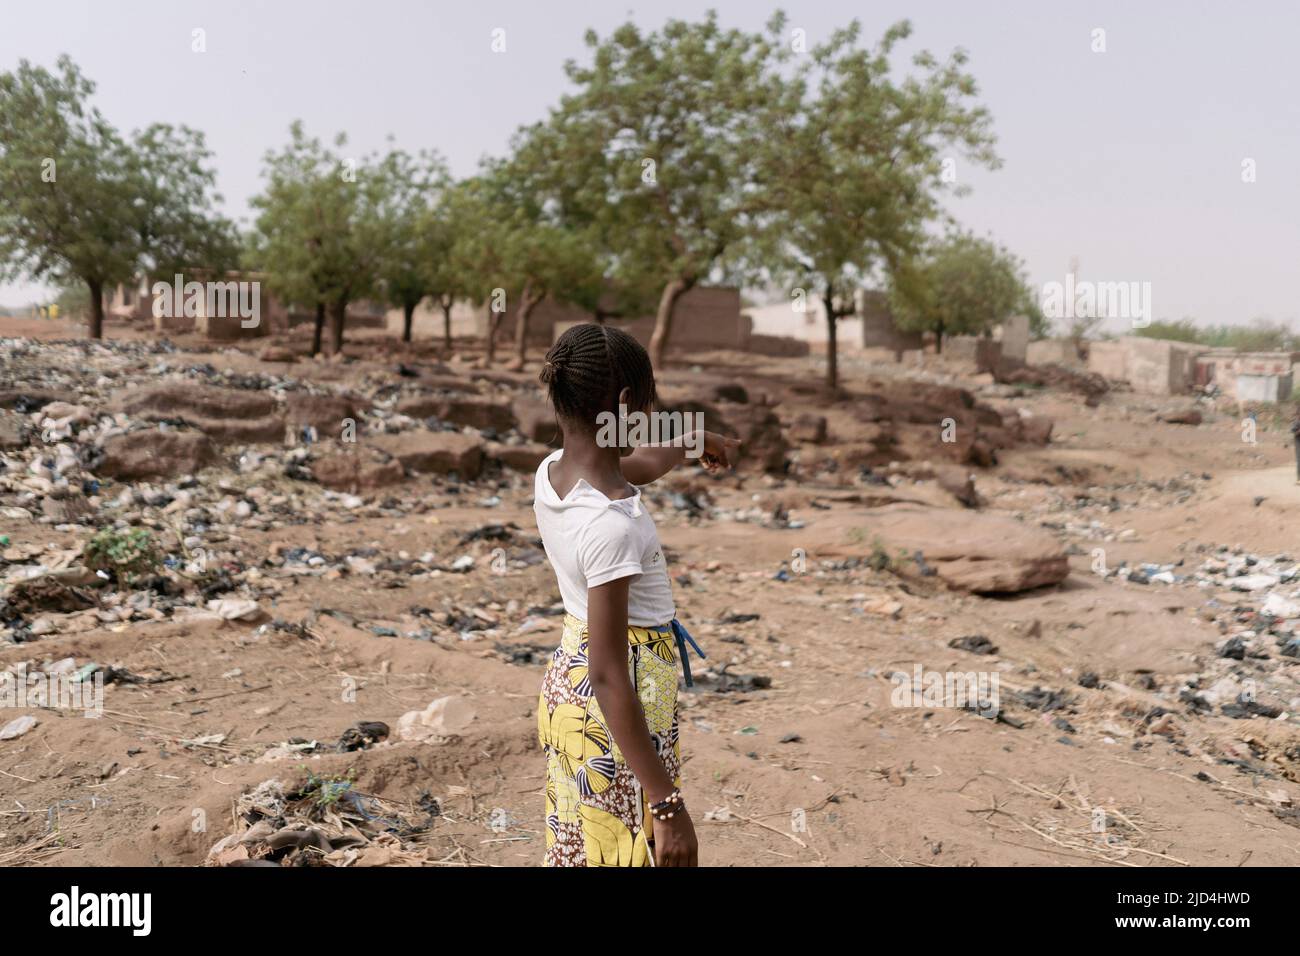 Jeune fille africaine debout avec elle dos à la caméra pointant vers le paysage déserte de sa patrie caractérisée par le changement climatique, désertique Banque D'Images